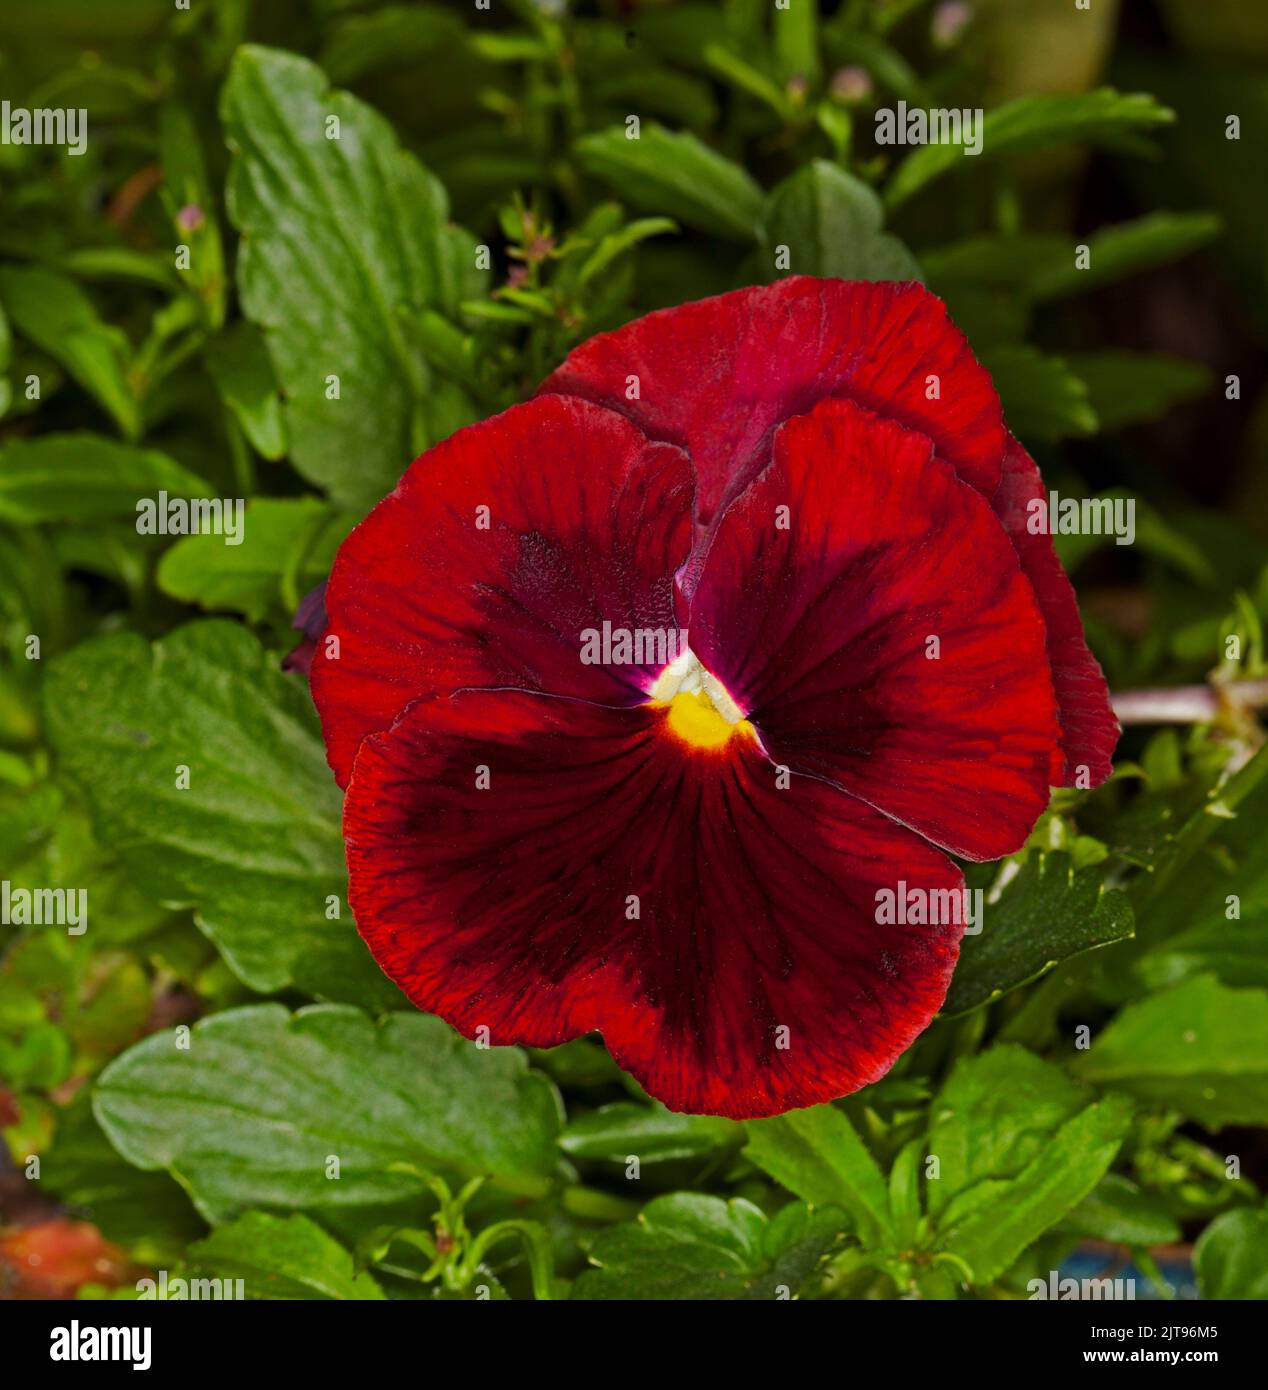 Magnifique grande fleur rouge foncé de Pansy, une floraison annuelle, sur fond de feuilles vertes émeraude Banque D'Images